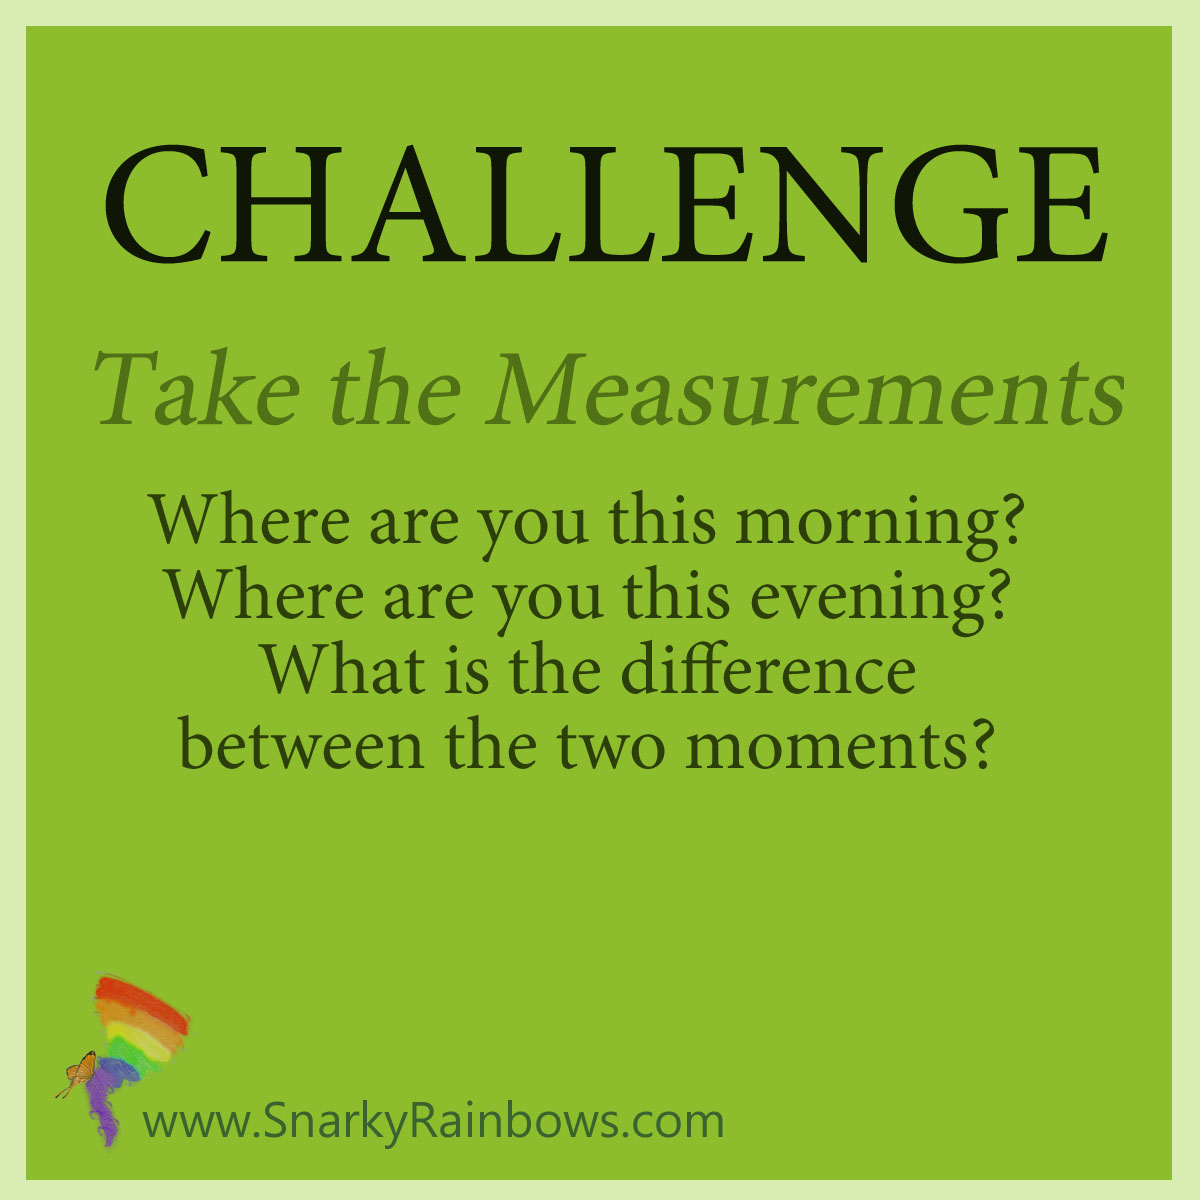 Challenge - Take the Measurements